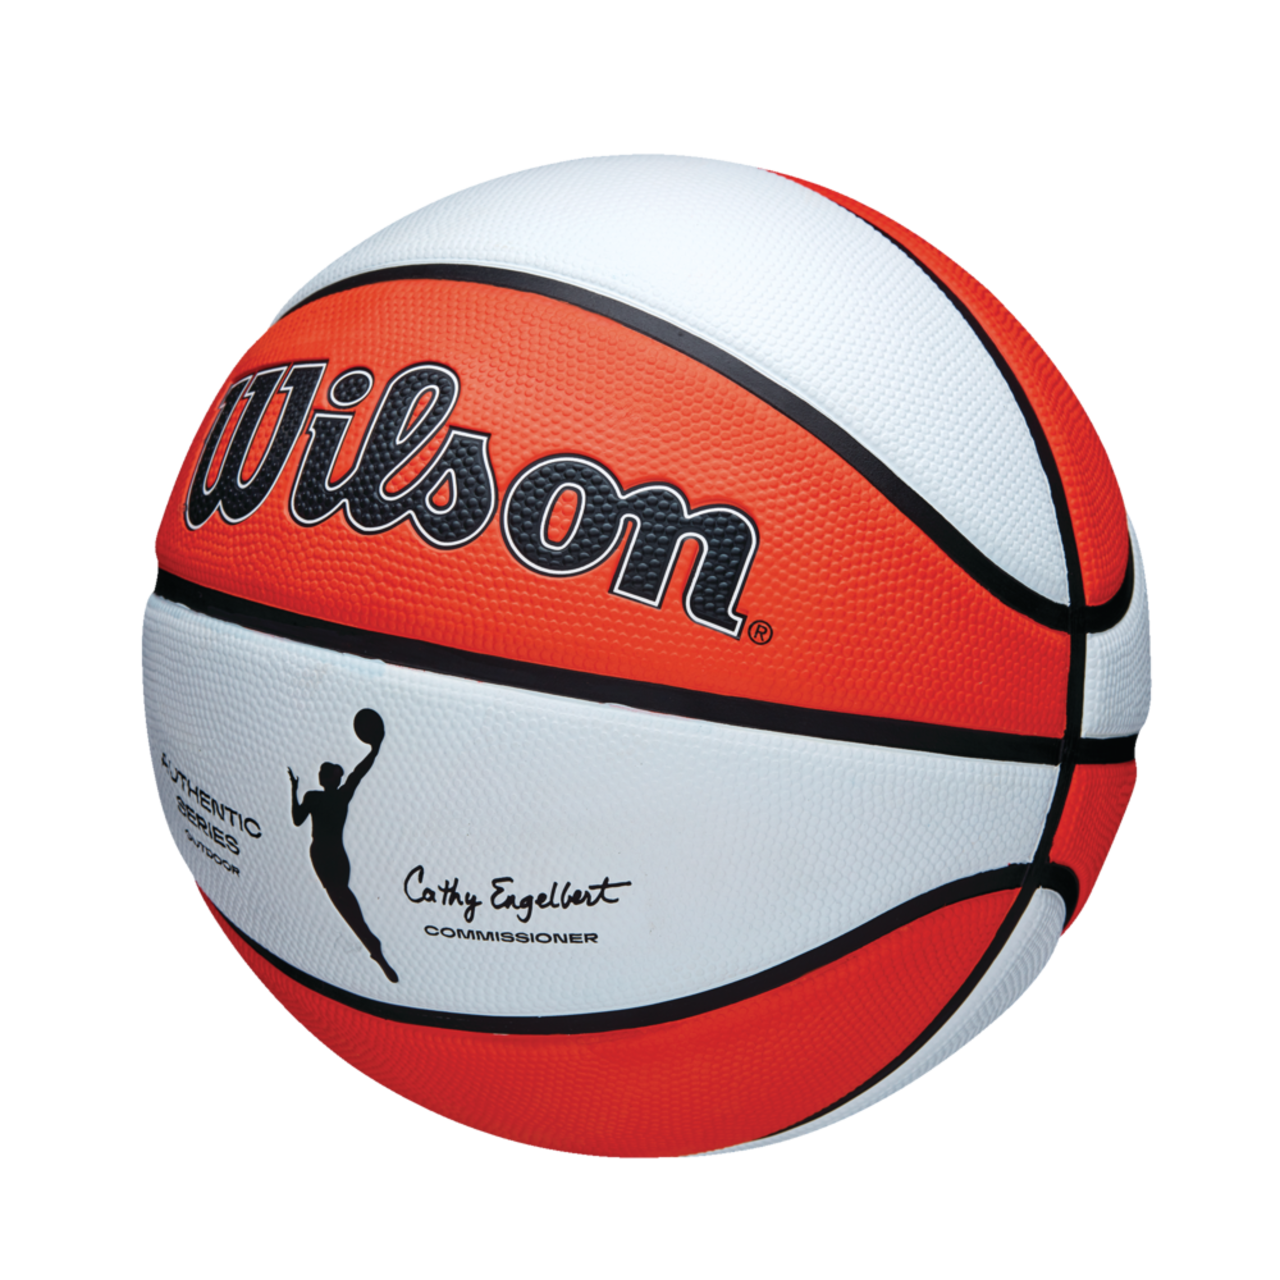 Pompe À Air Basket-Ball Et Ballon De Football, Mode en ligne